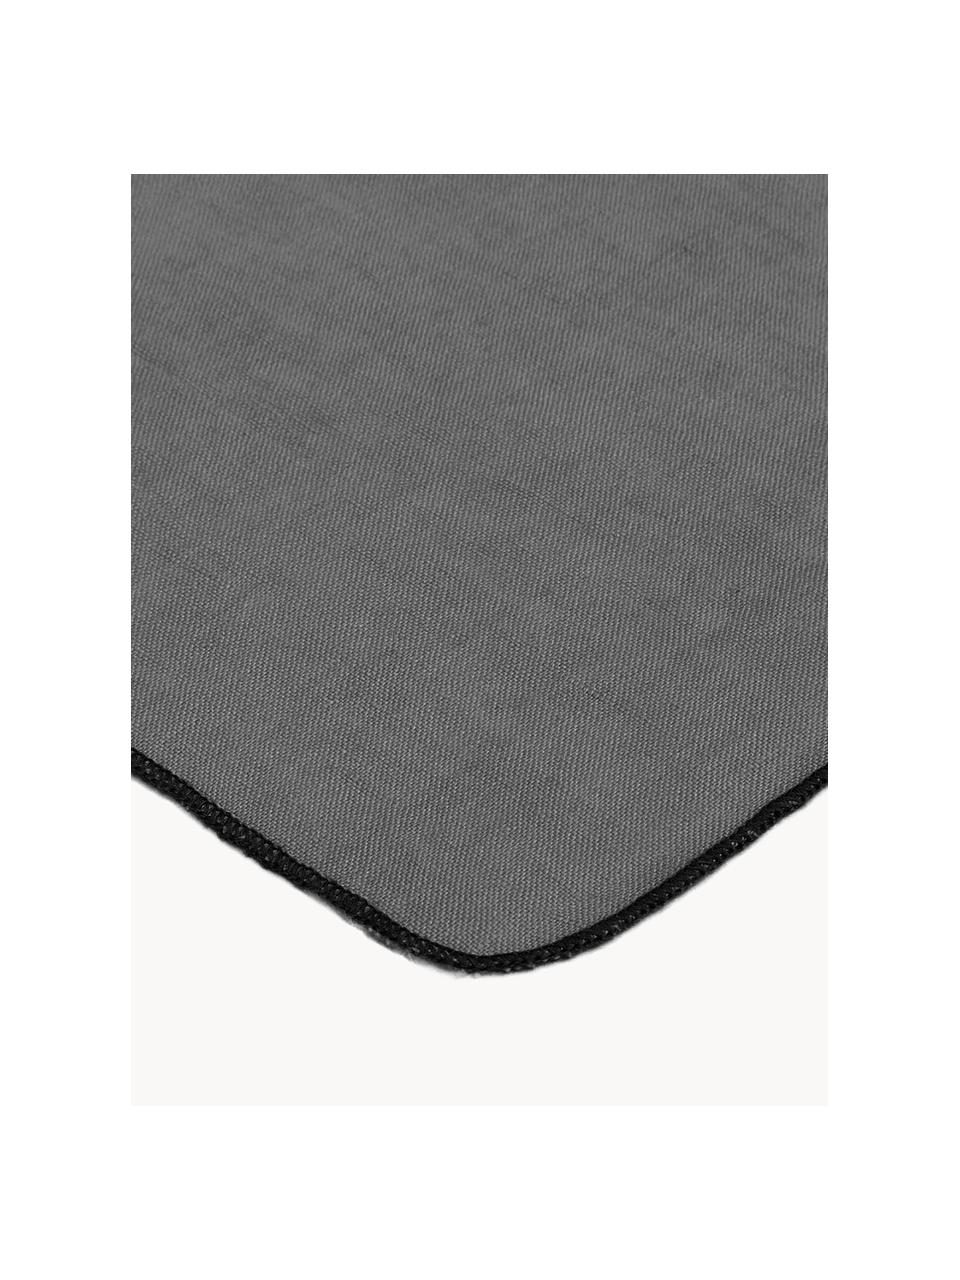 Serviettes de table en lin Gracie, 2 pièces, 100 % pur lin, Gris foncé, larg. 45 x long. 45 cm